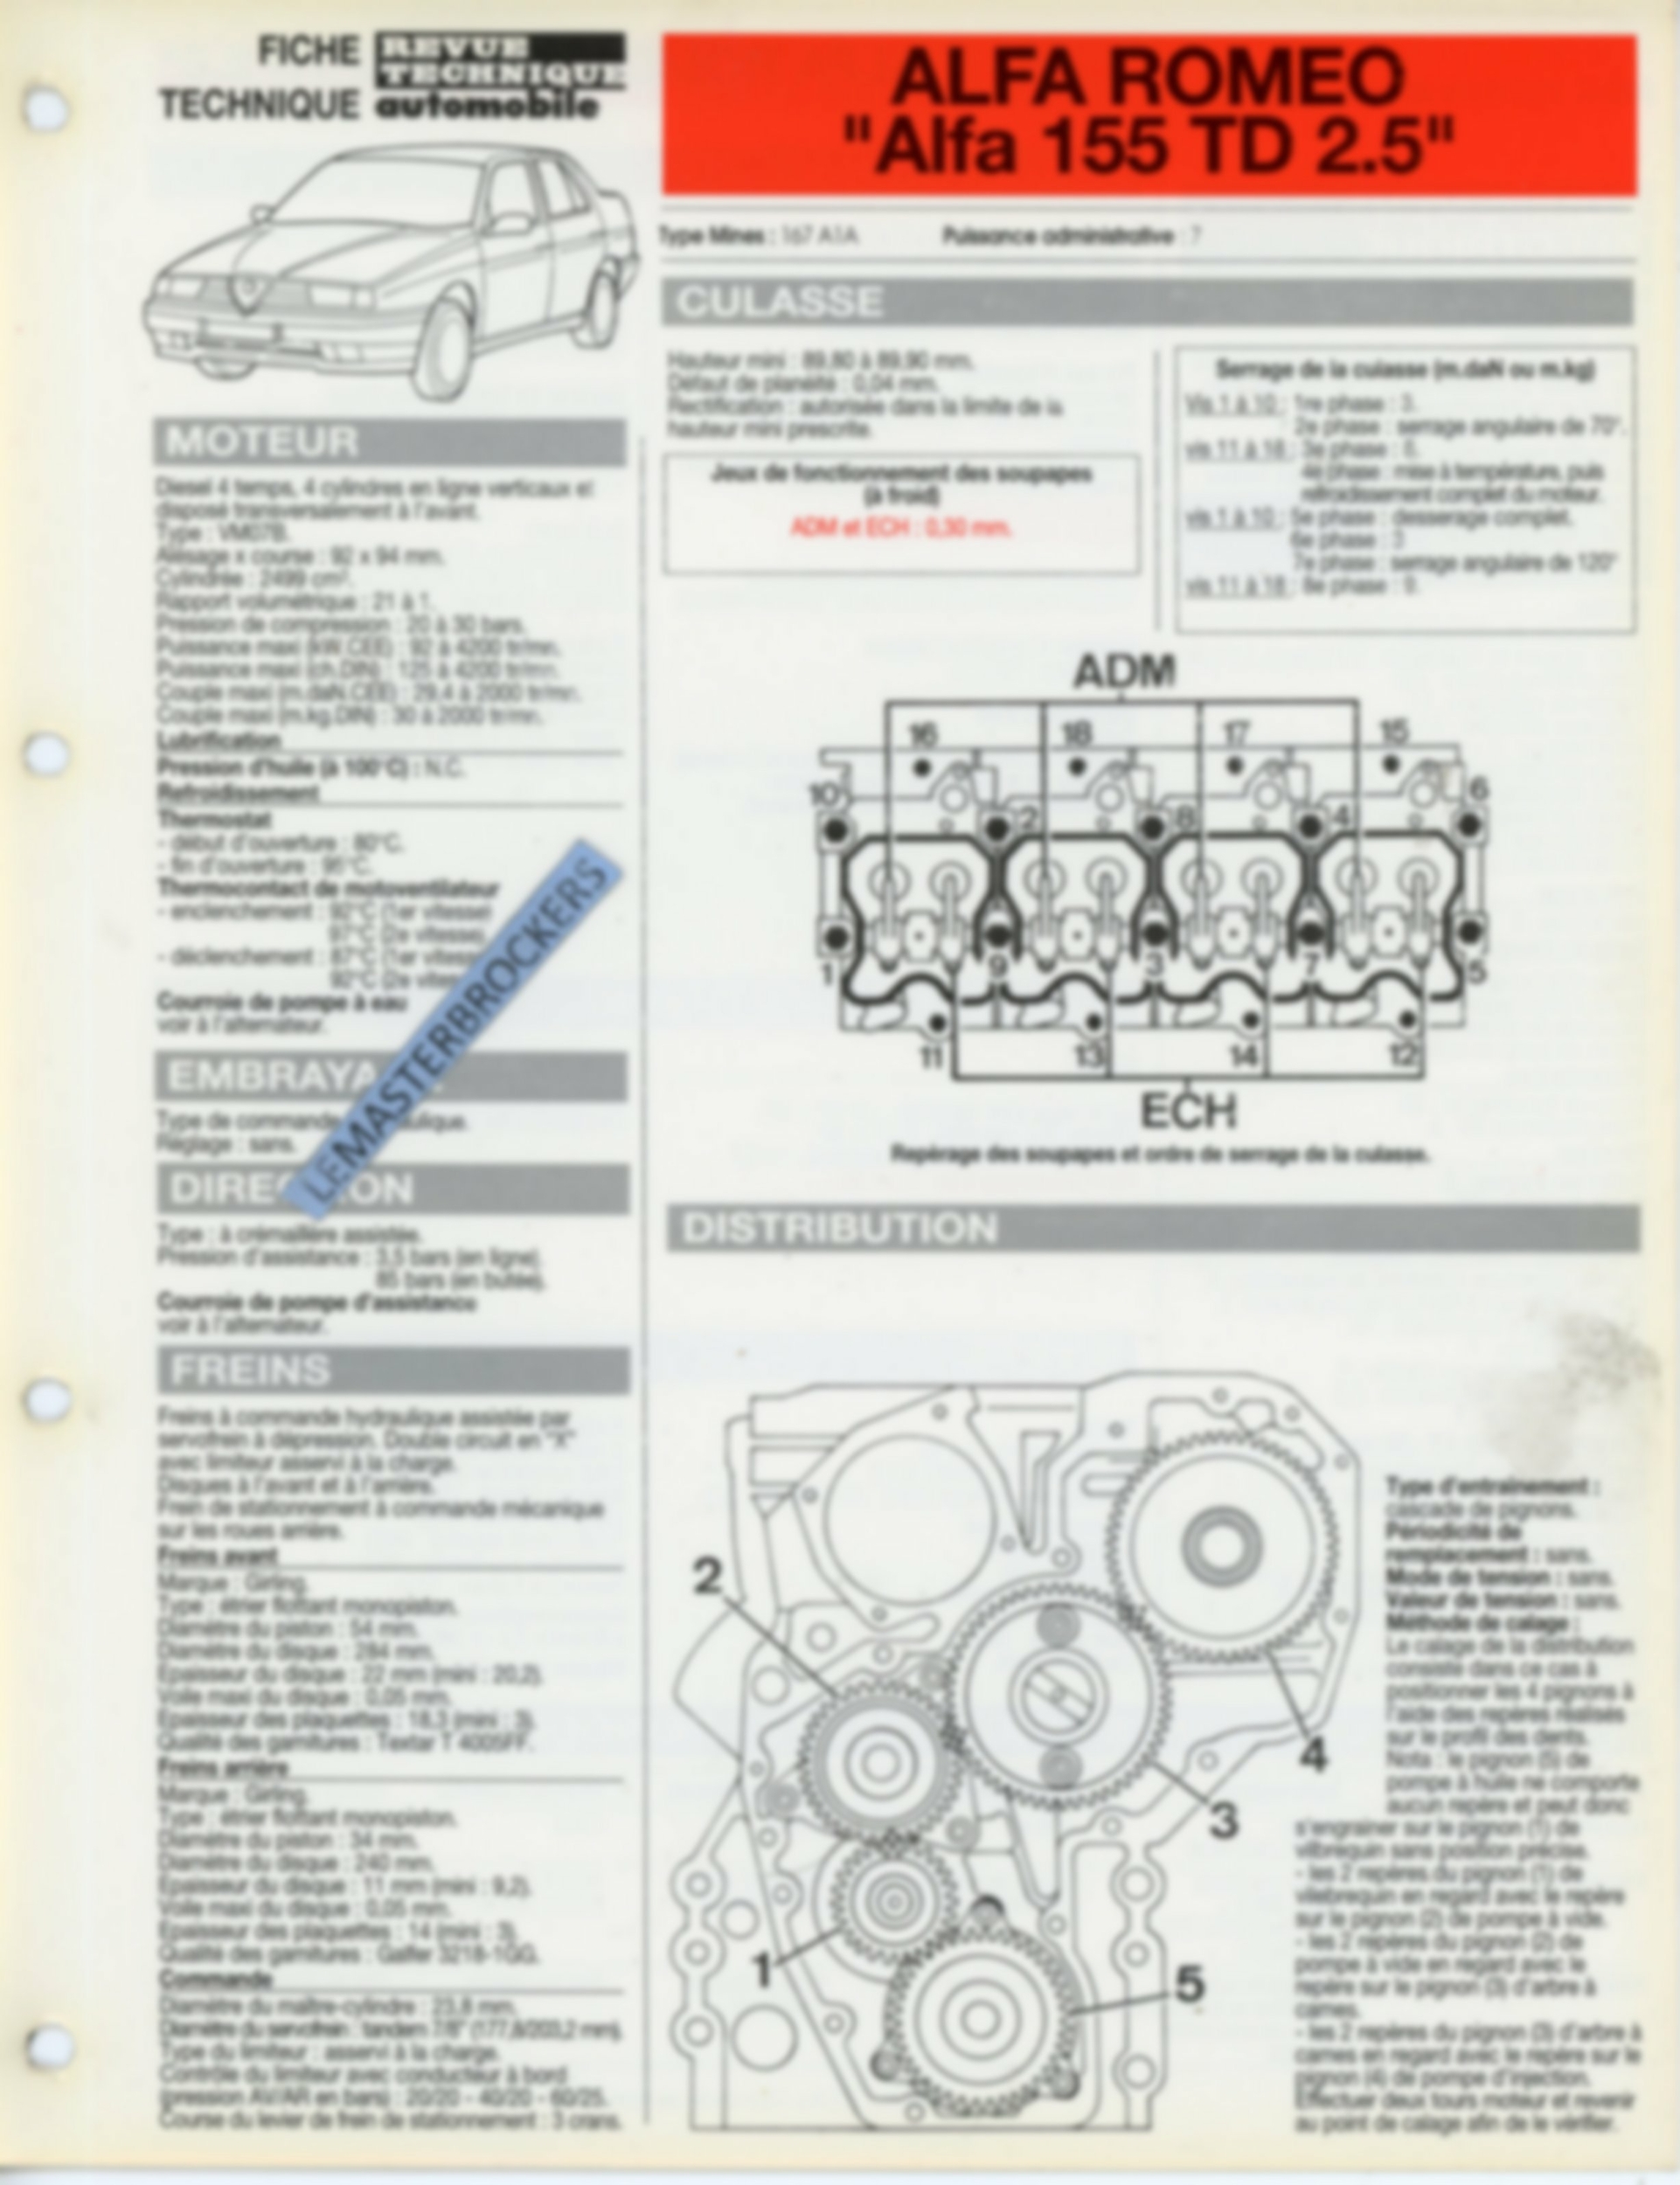 FICHE-TECHNIQUE-ALFA-155-TD-1993-FICHE-RTA-AUTO-LEMASTERBROCKERS